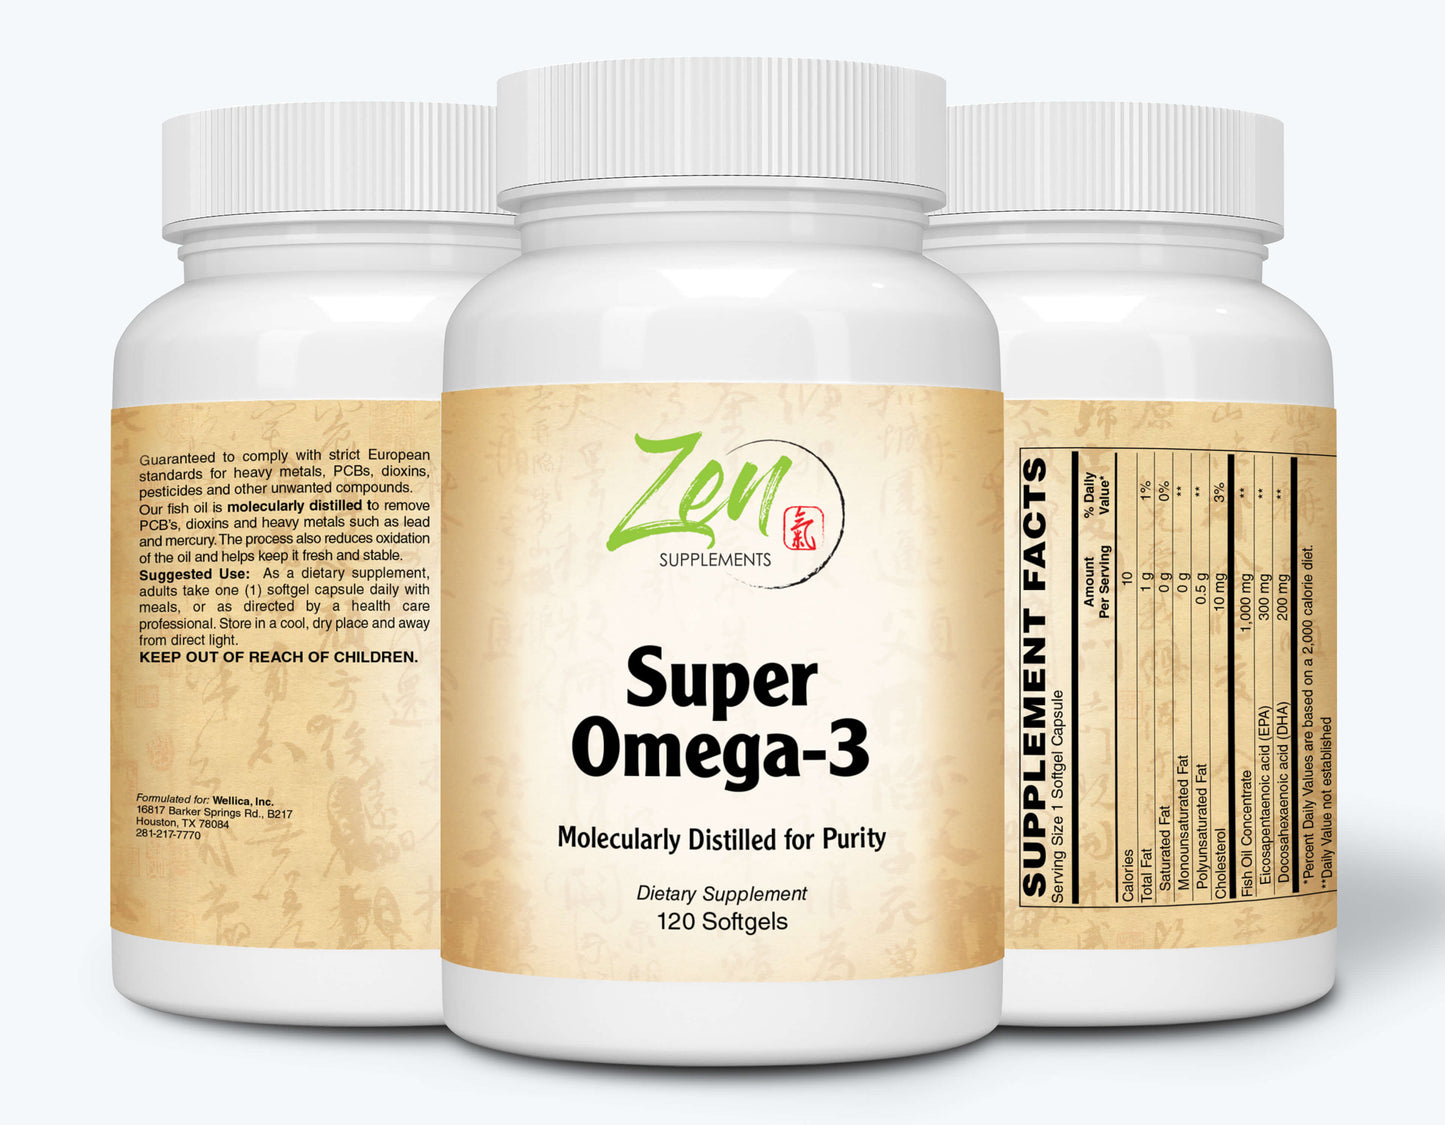 Super Omega-3 - With EPA & DHA - 120 or 240 Softgel